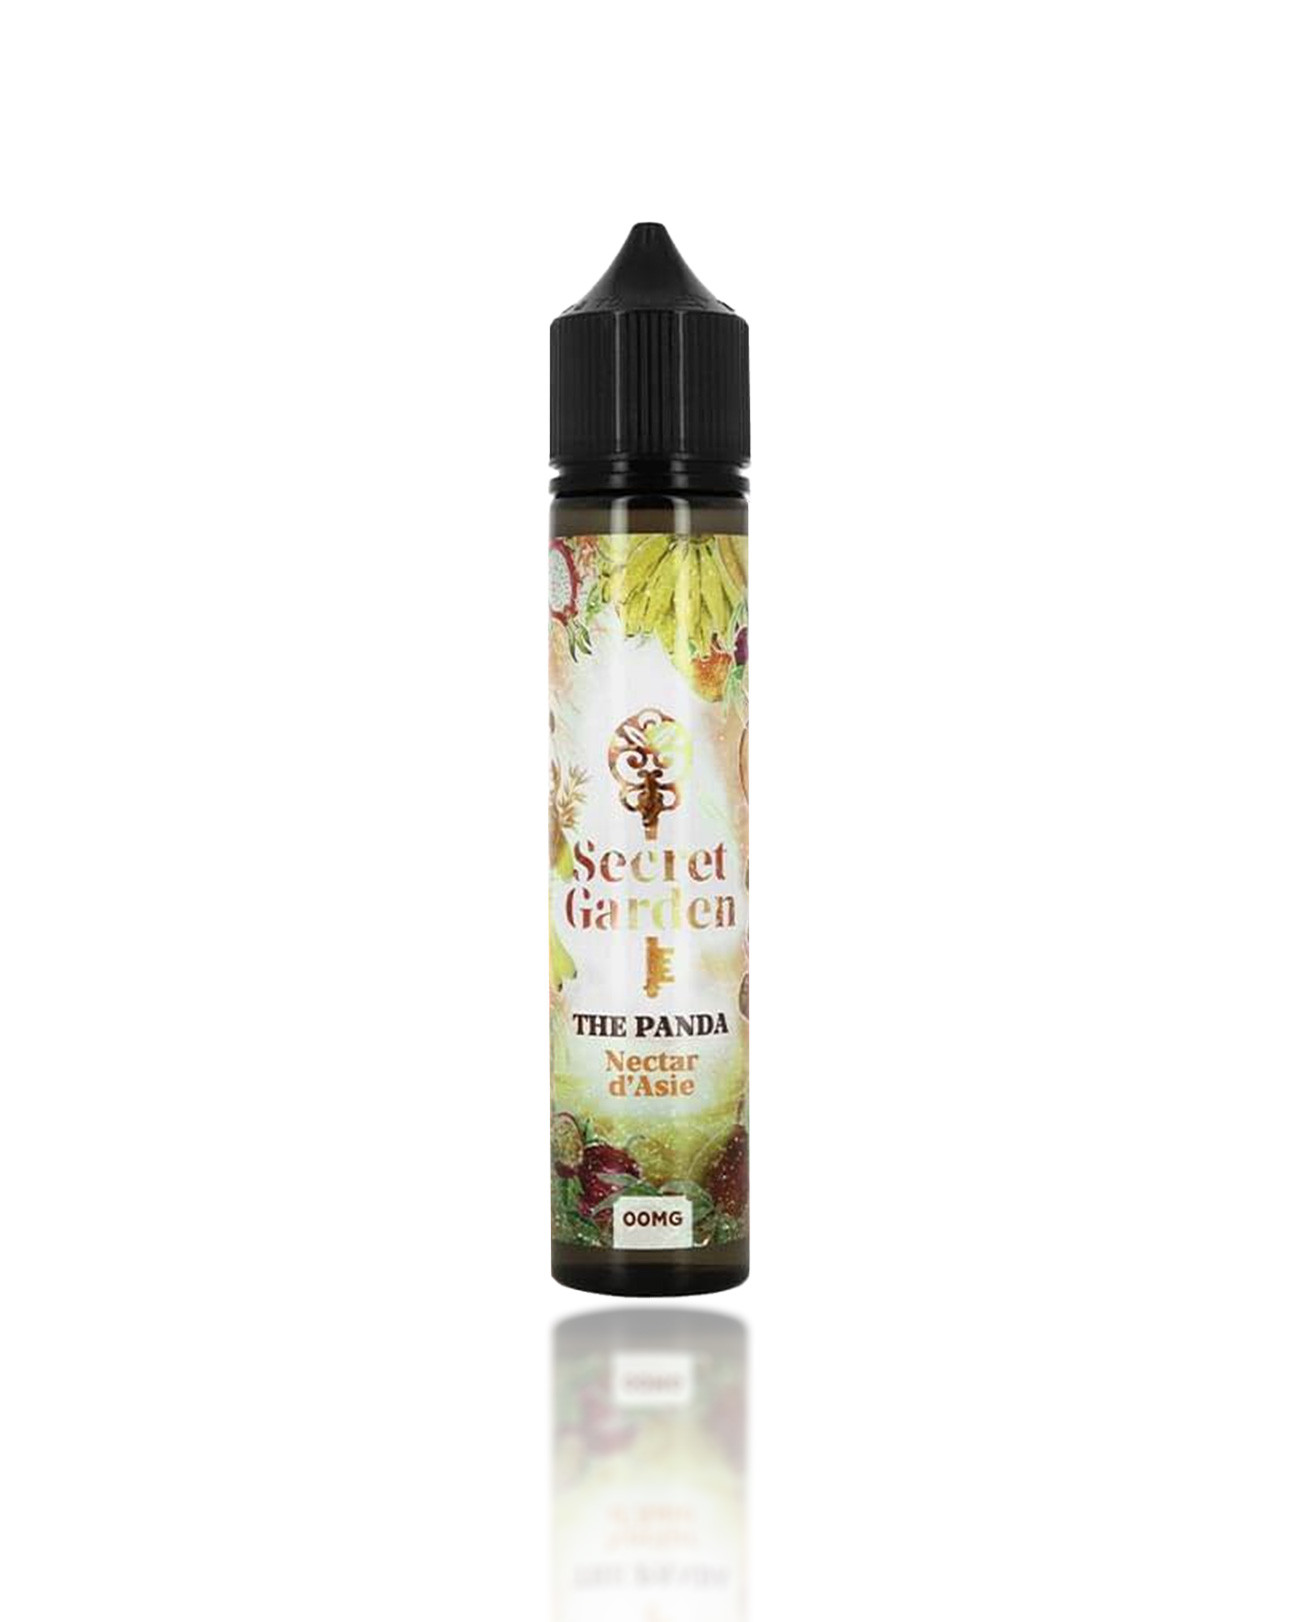 E-liquide 50 ml pour cigarette électronique Secret Garden The Panda parfum frais mangue, fruit de la passion et banane